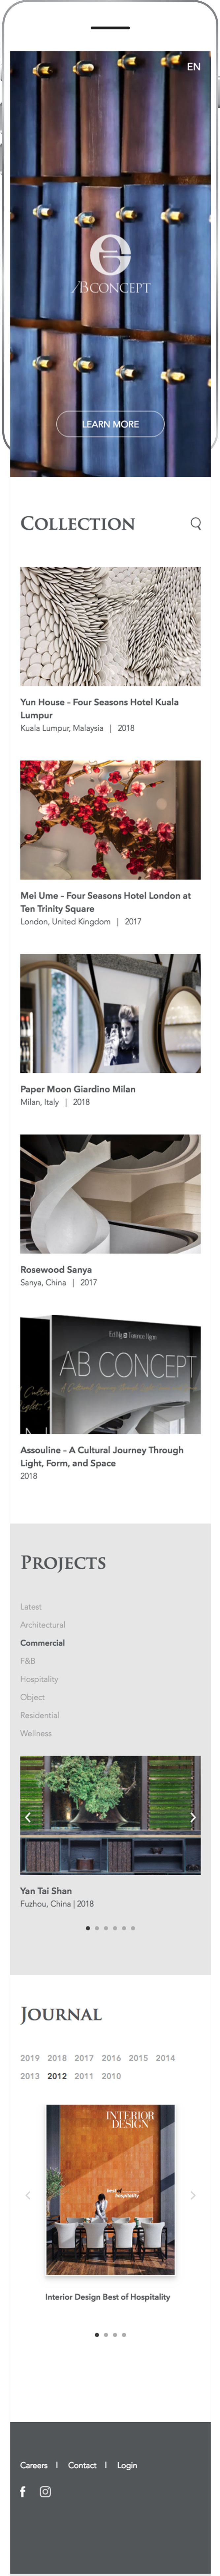 Web Design AB Concept